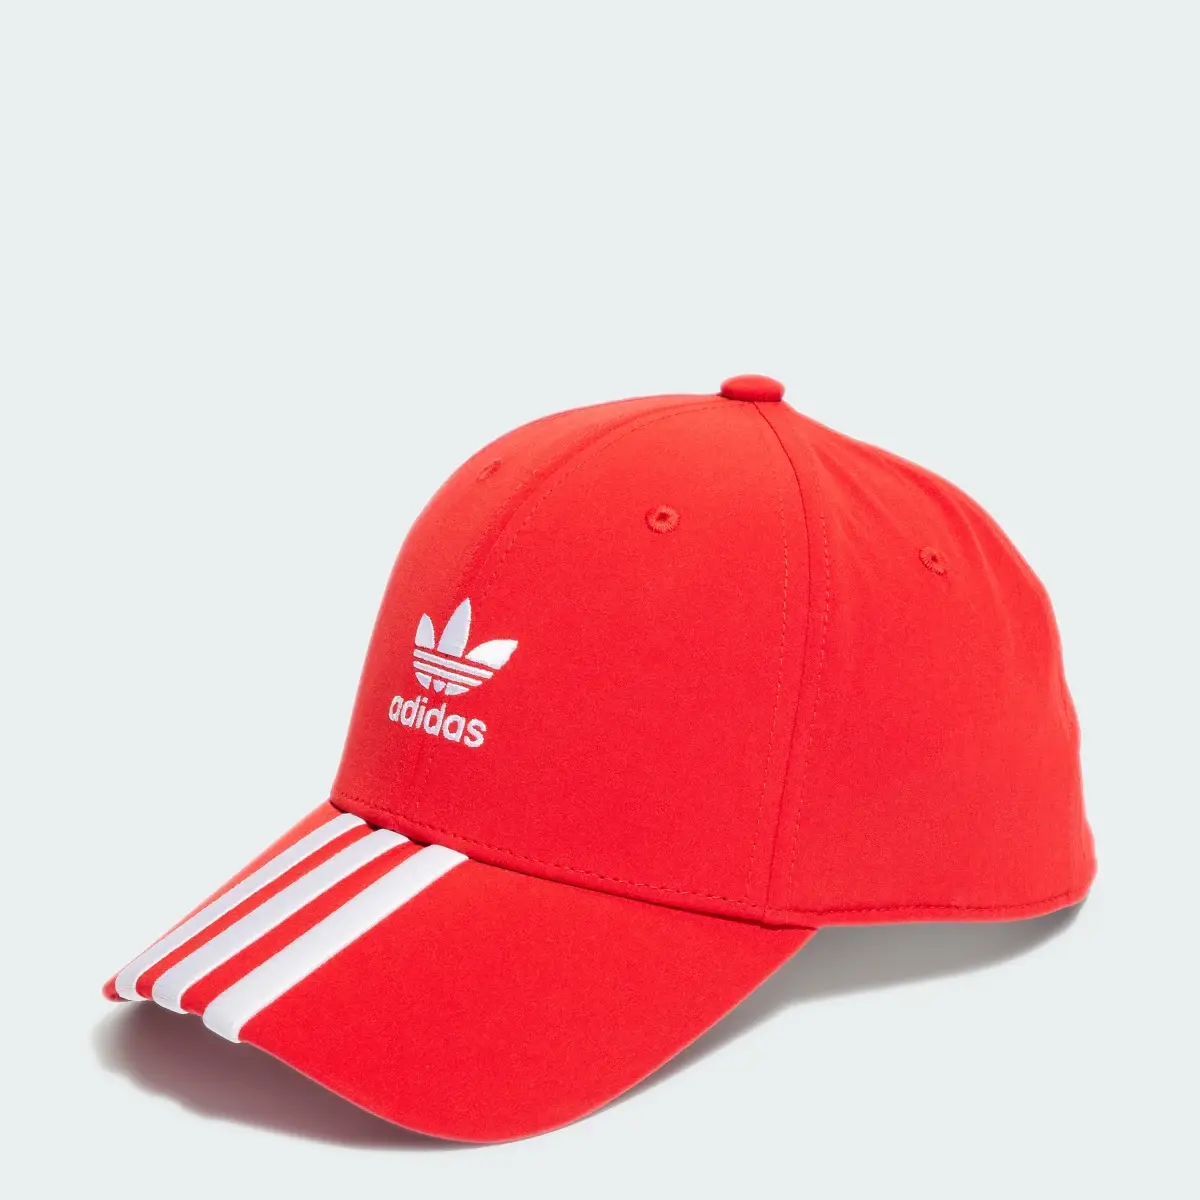 Adidas Adi Dassler Kappe. 1